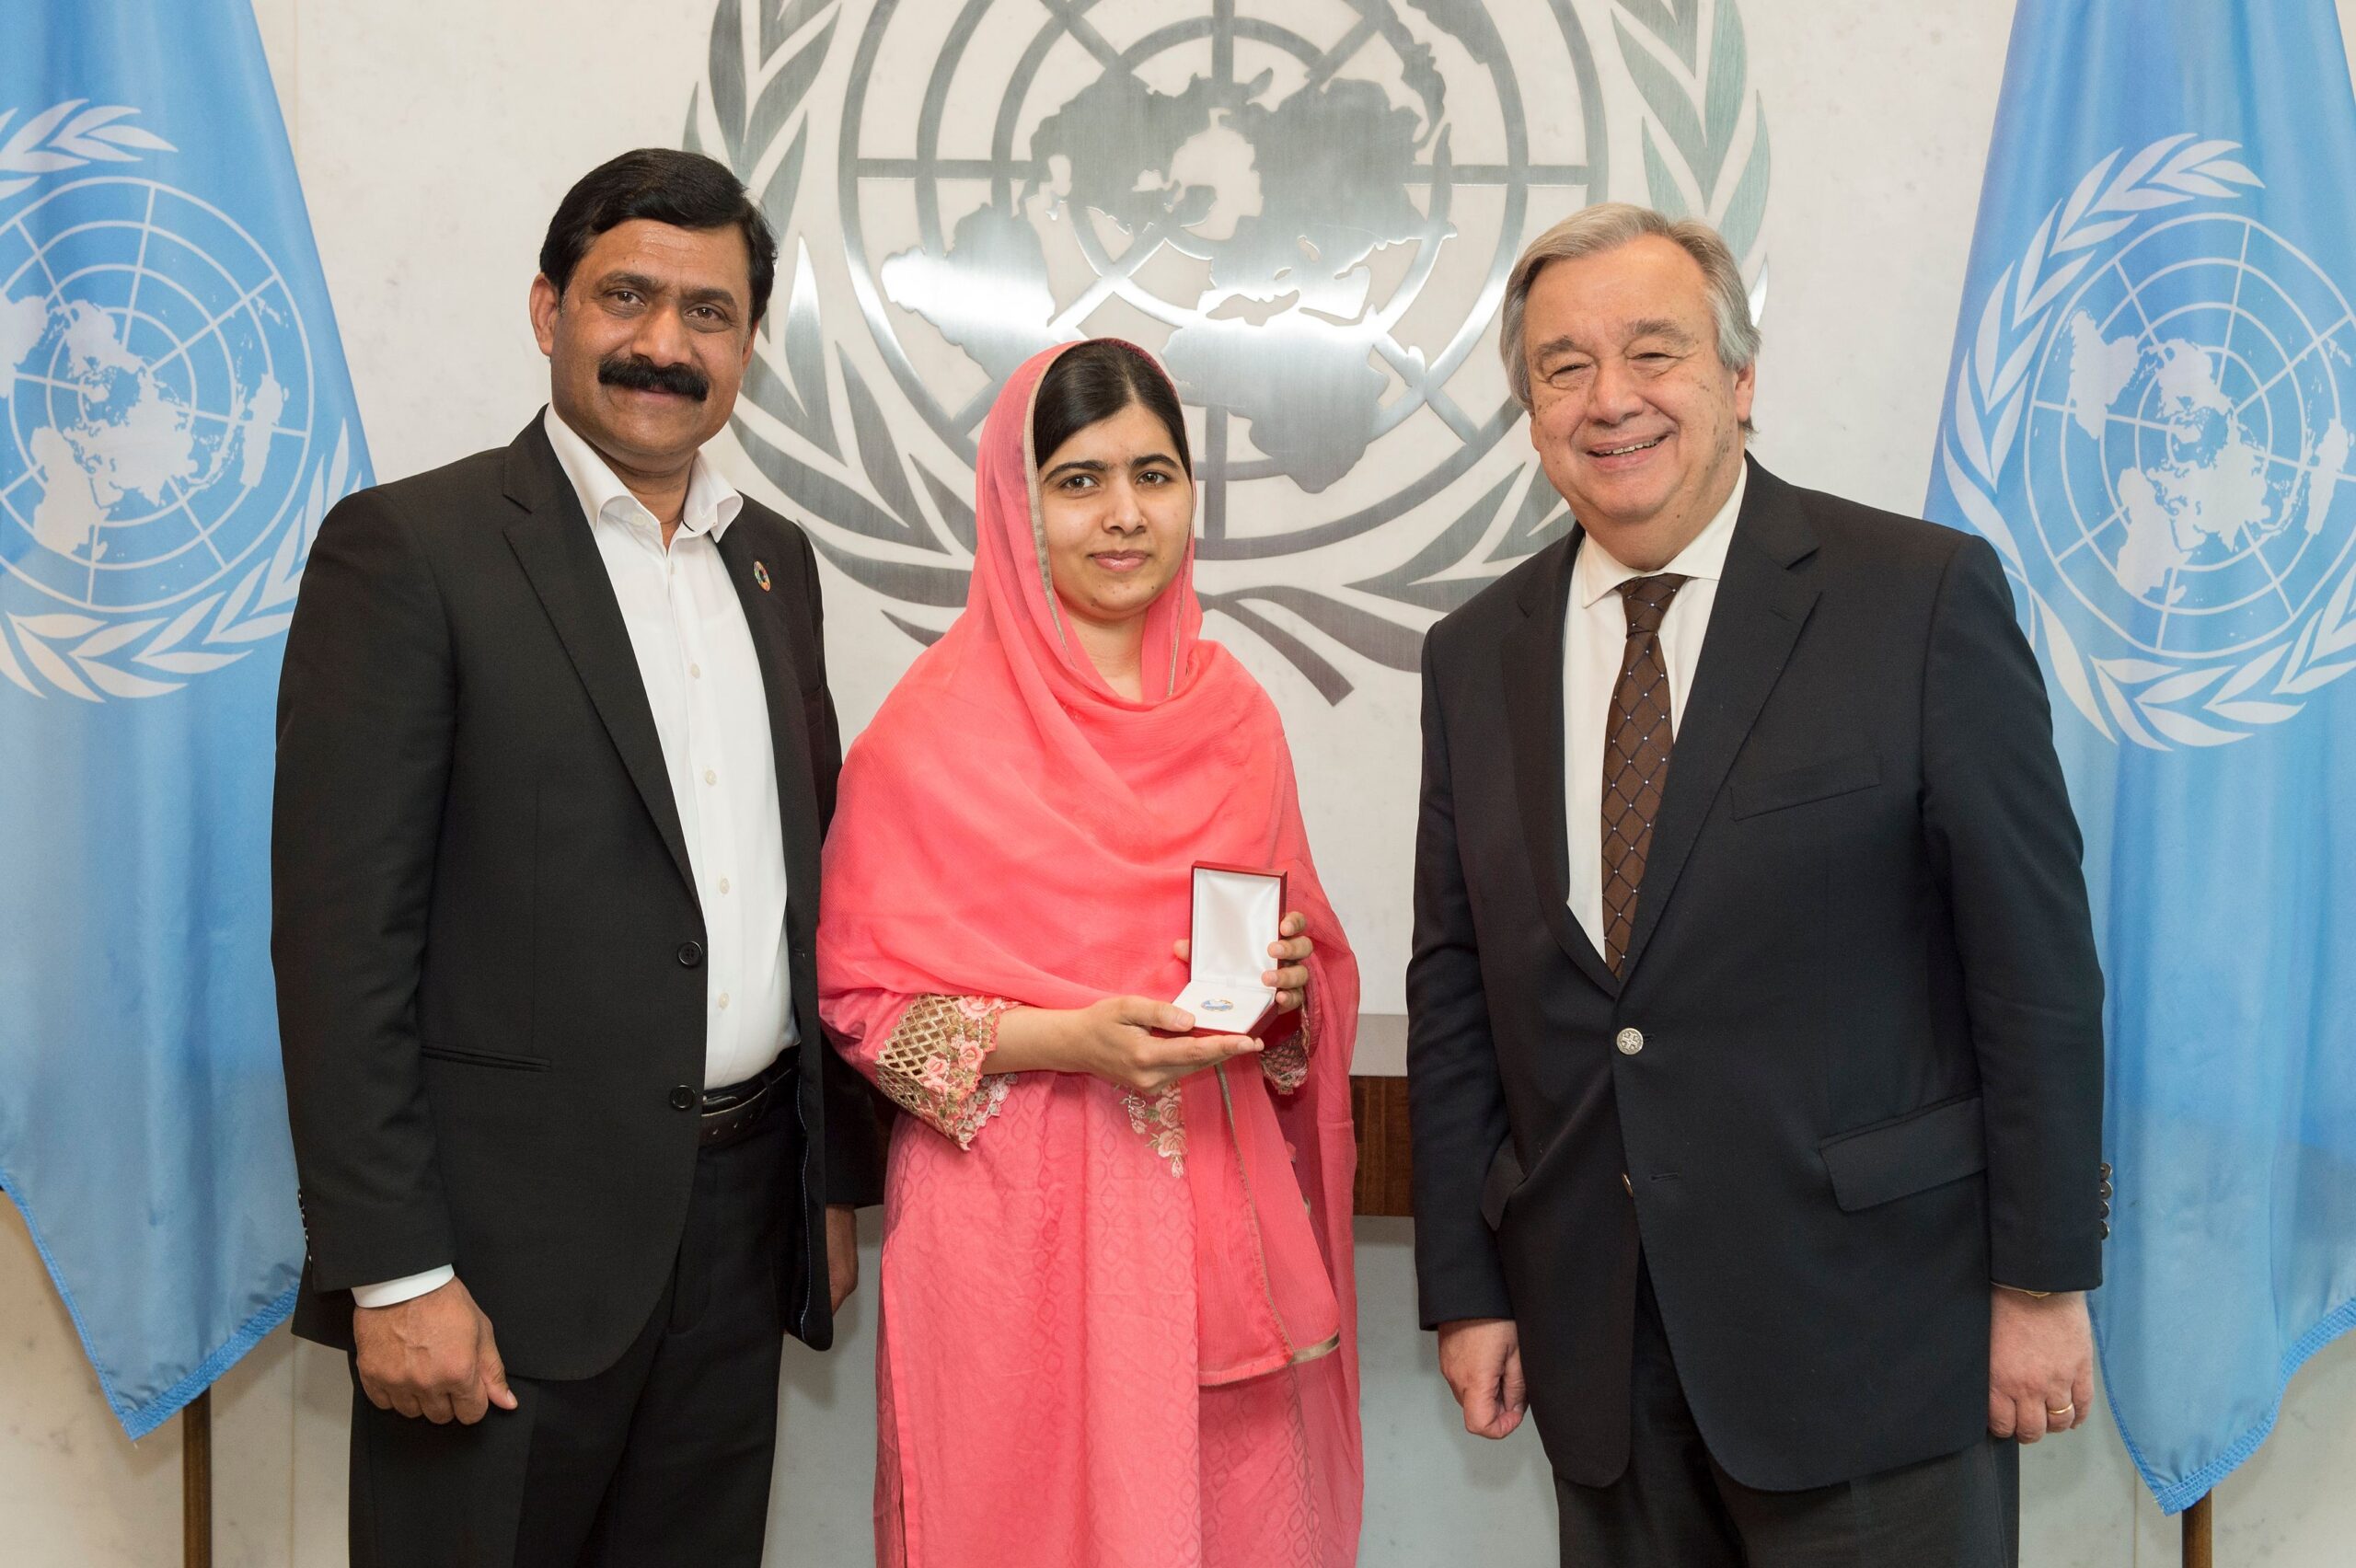 Malala pozează alături de tatăl ei și de secretarul general ONU la sediul organizației. Malala este îmbrăcată cu un sari roz și ce doi bărbați poartă costume negre.